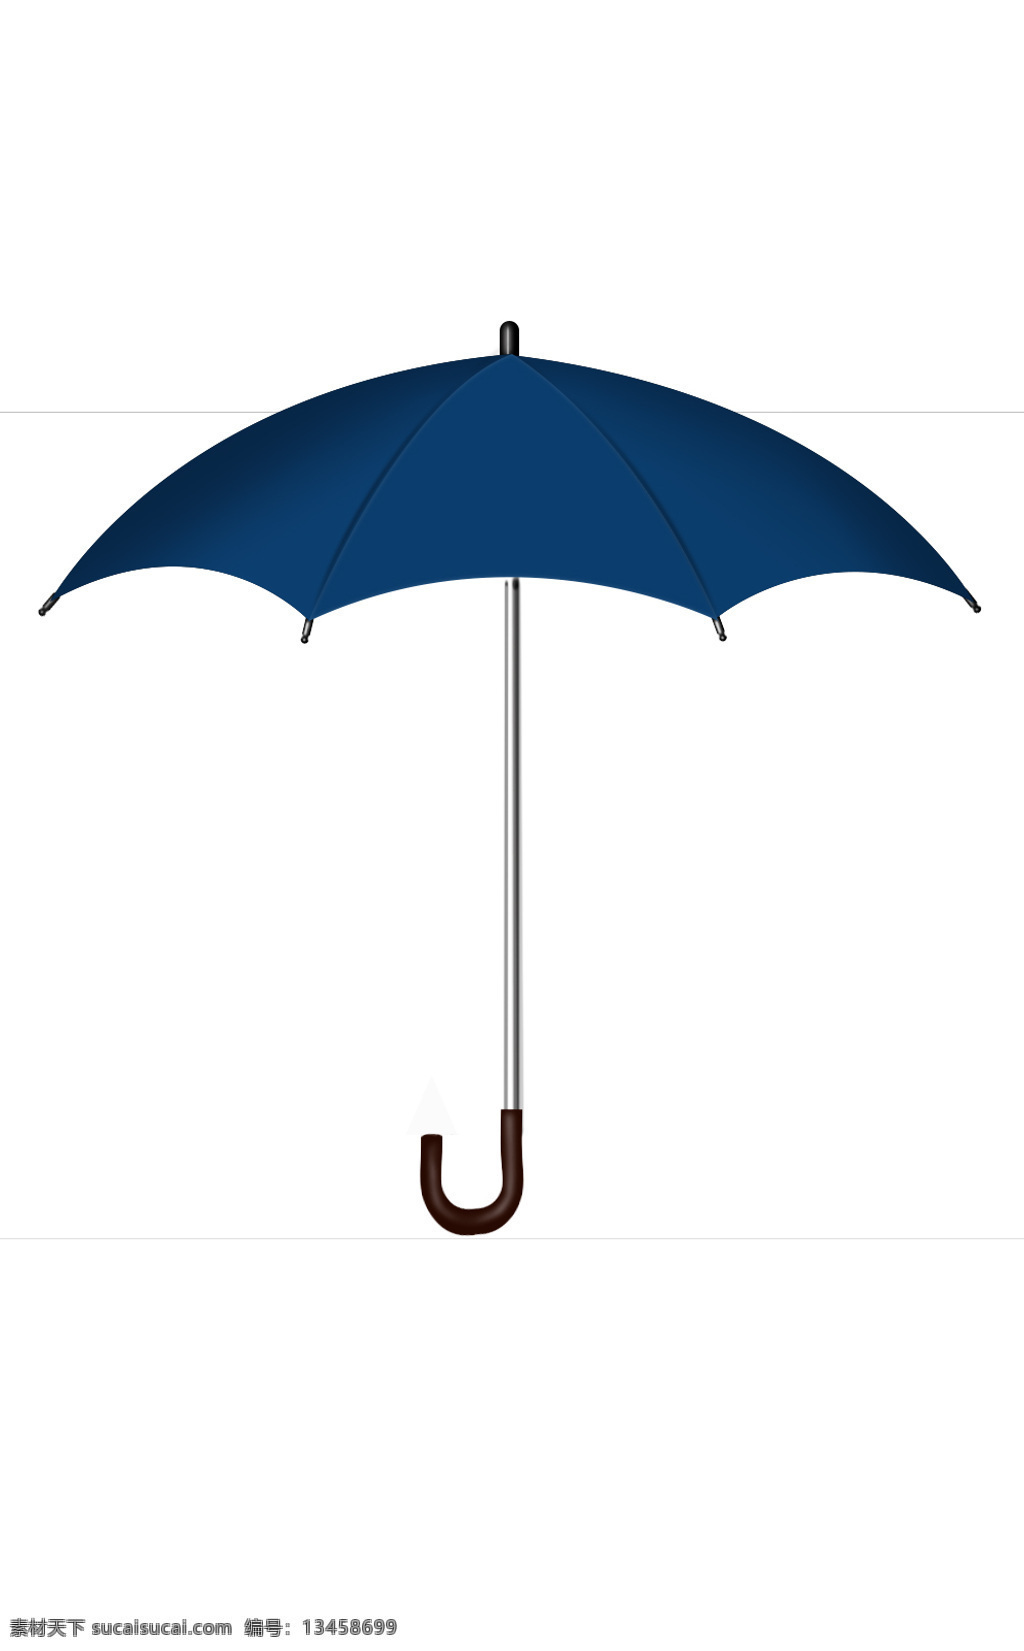 小伞 伞 制作 非照片 生活用品 雨伞